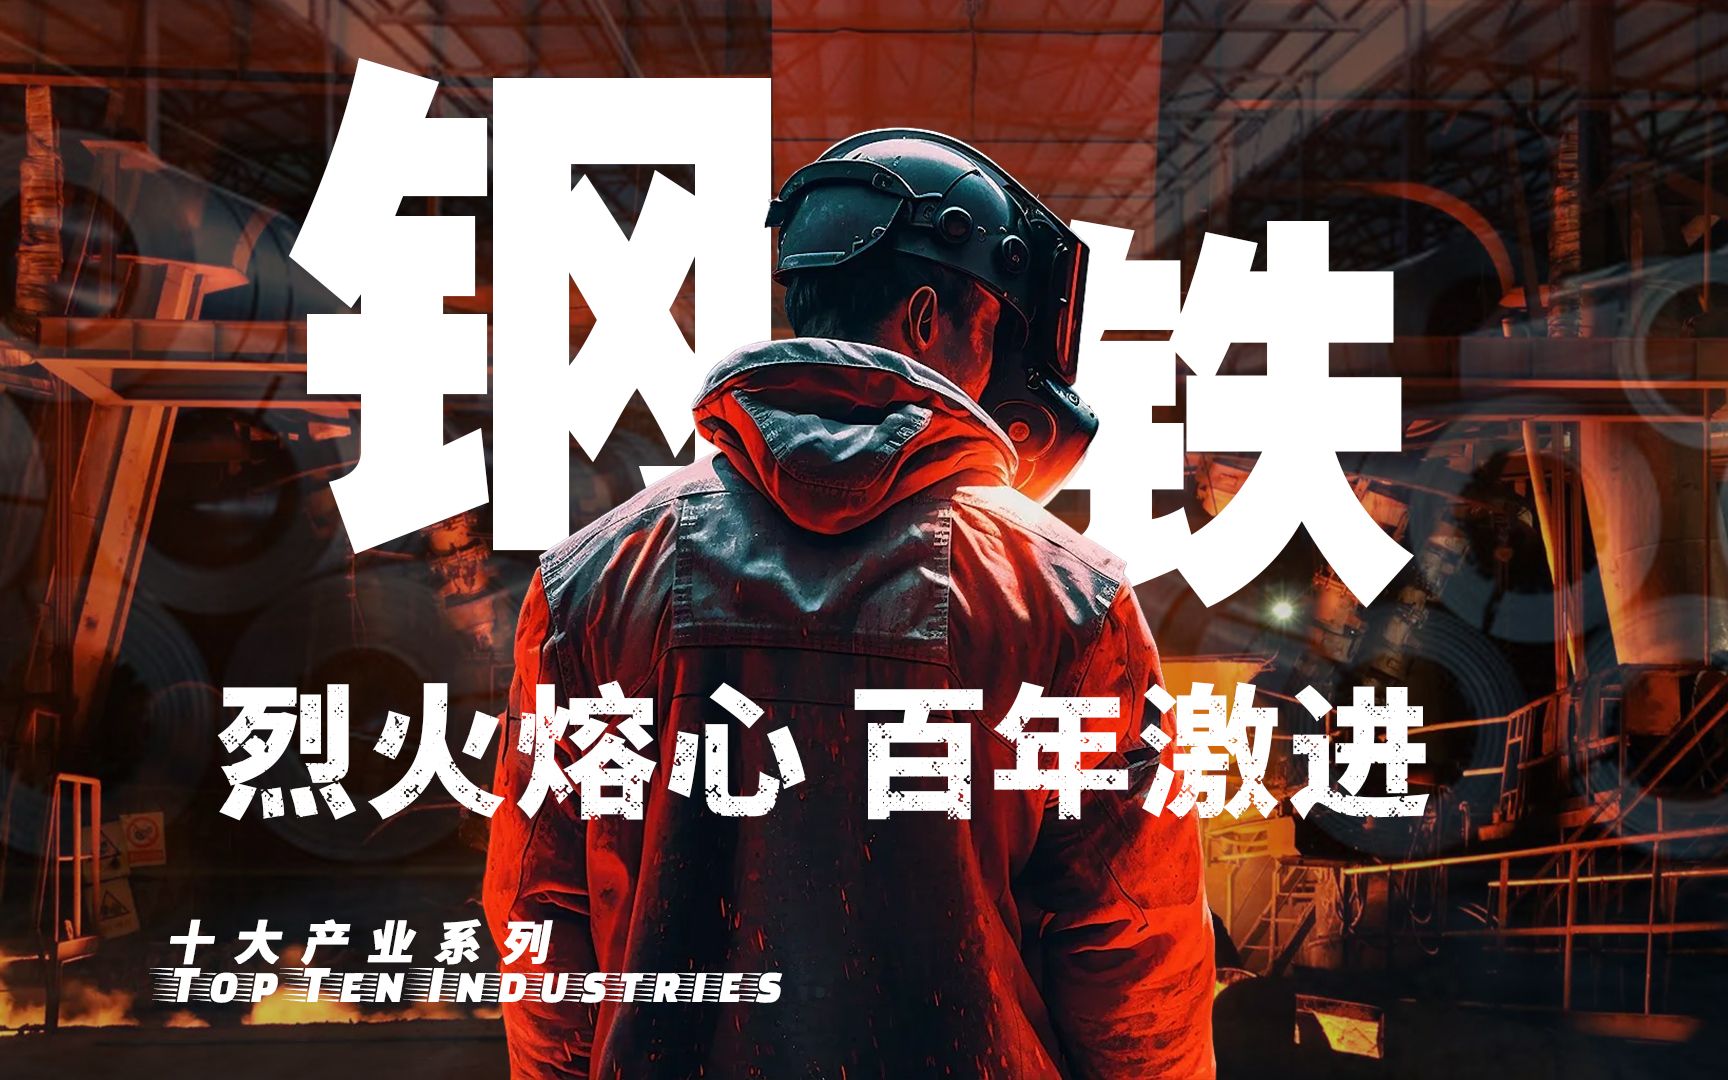 【十大产业】中国钢铁业：谈判、混改、八战七败，中国钢铁产业黑暗往事